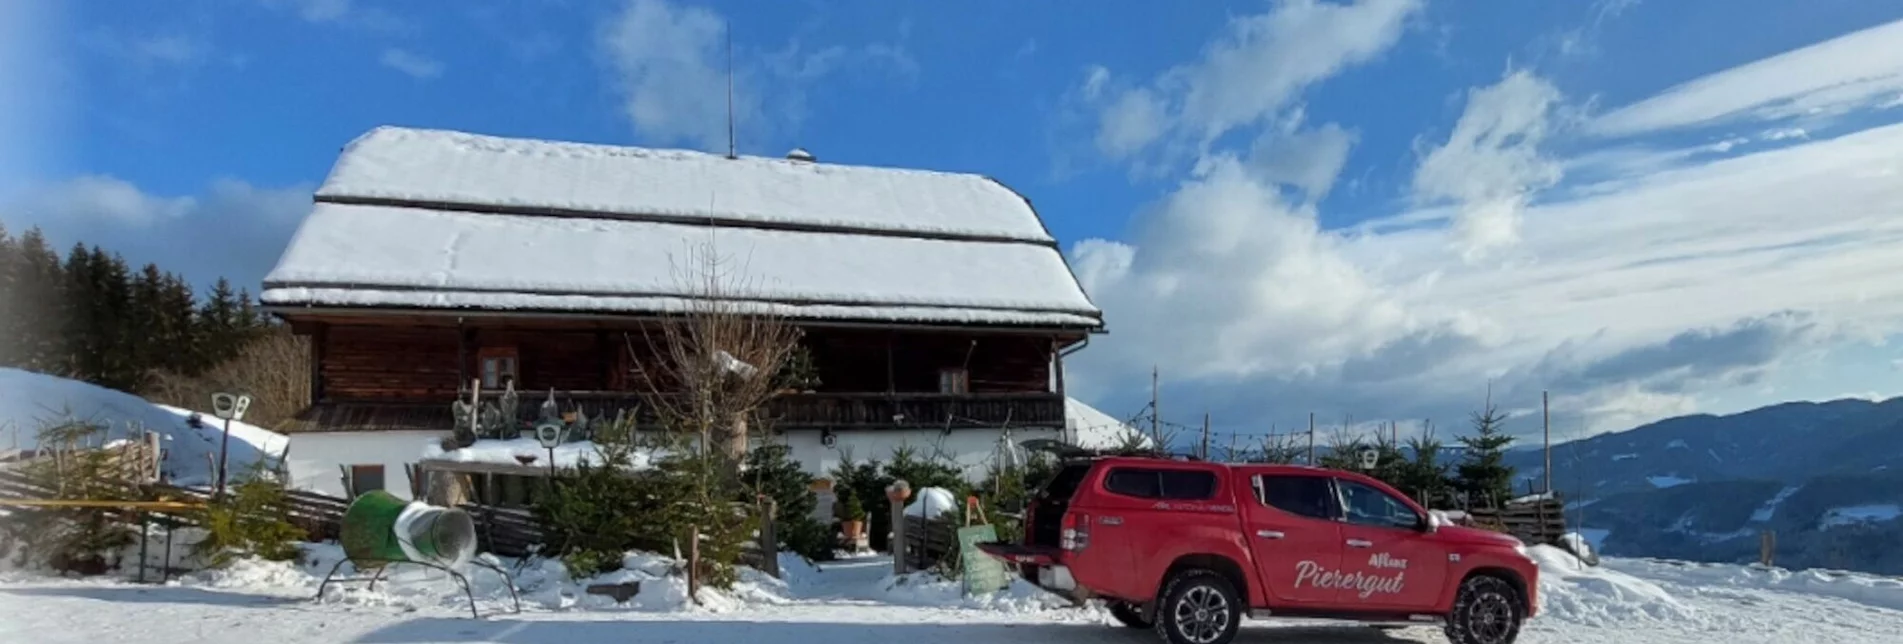 Winterwandern Winterwanderung zum Pierergut - Touren-Impression #1 | © TV Hochsteiermark